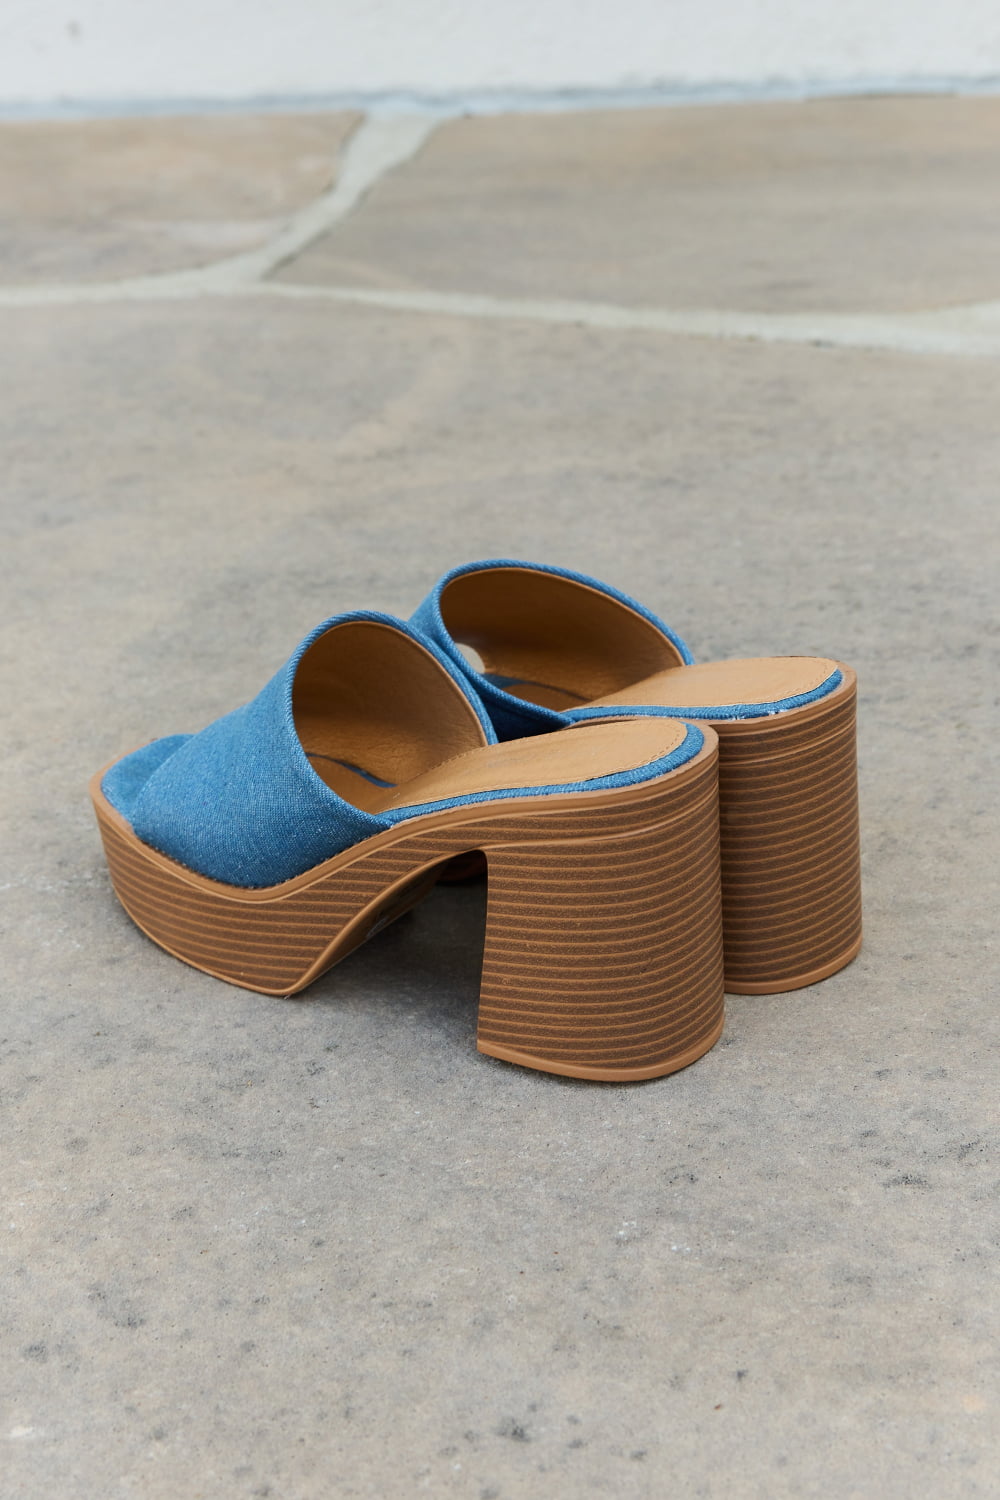 Weeboo Essential Platform Heel Sandals - Cheeky Chic Boutique